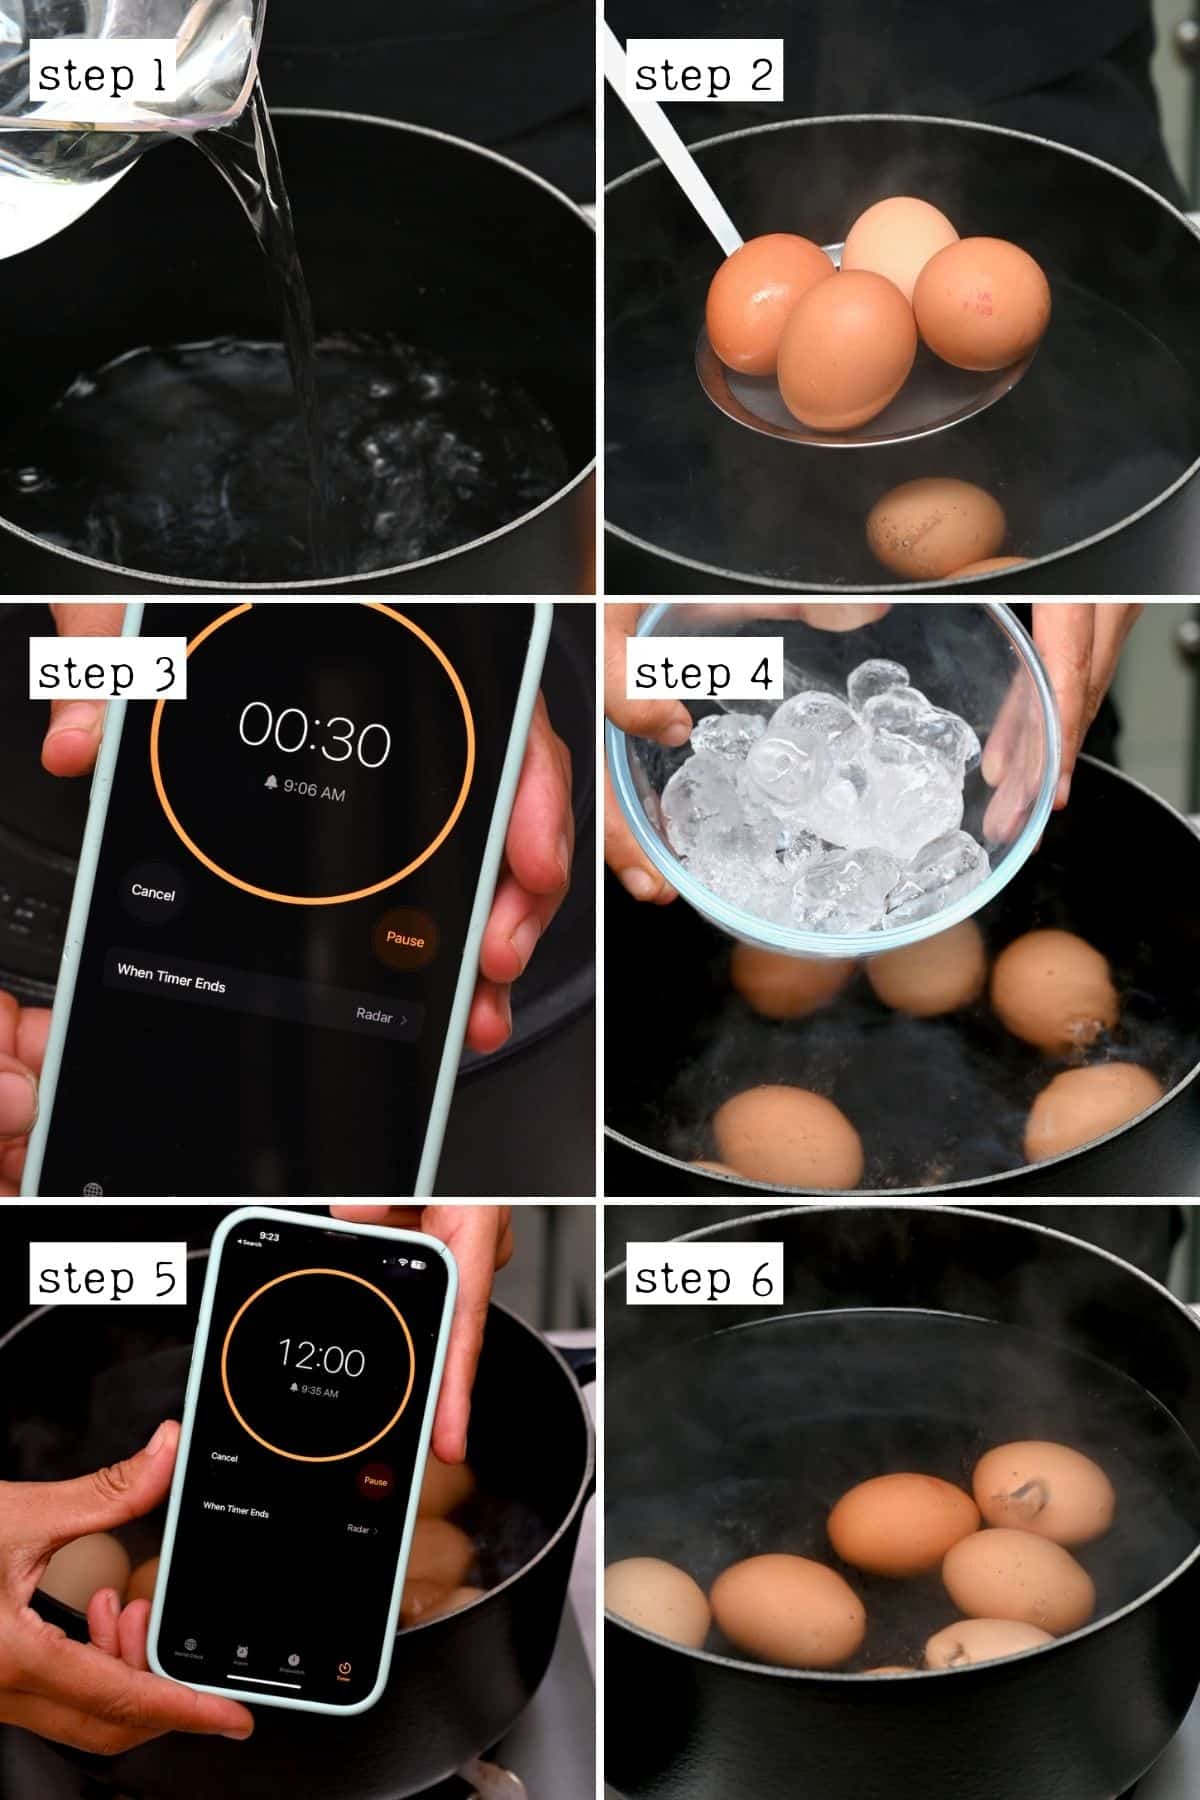 Steps for boiling eggs